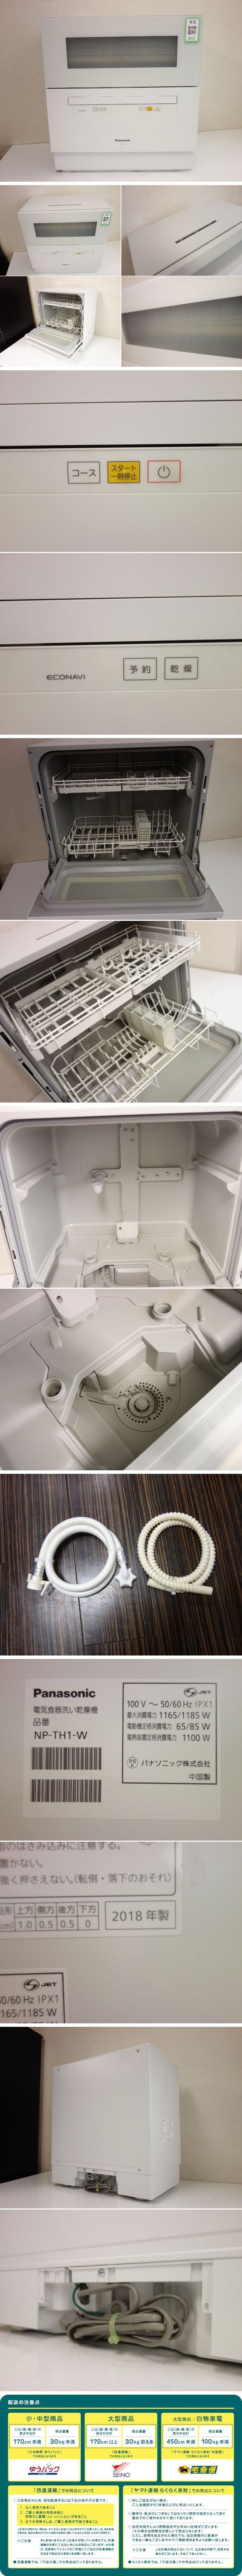 予算案M▽パナソニック 食器洗い乾燥機 食洗機 2018年 高温除菌 5人分 食器40点 据え置き ホワイト NP-TH1 (26331) 食器洗い乾燥機